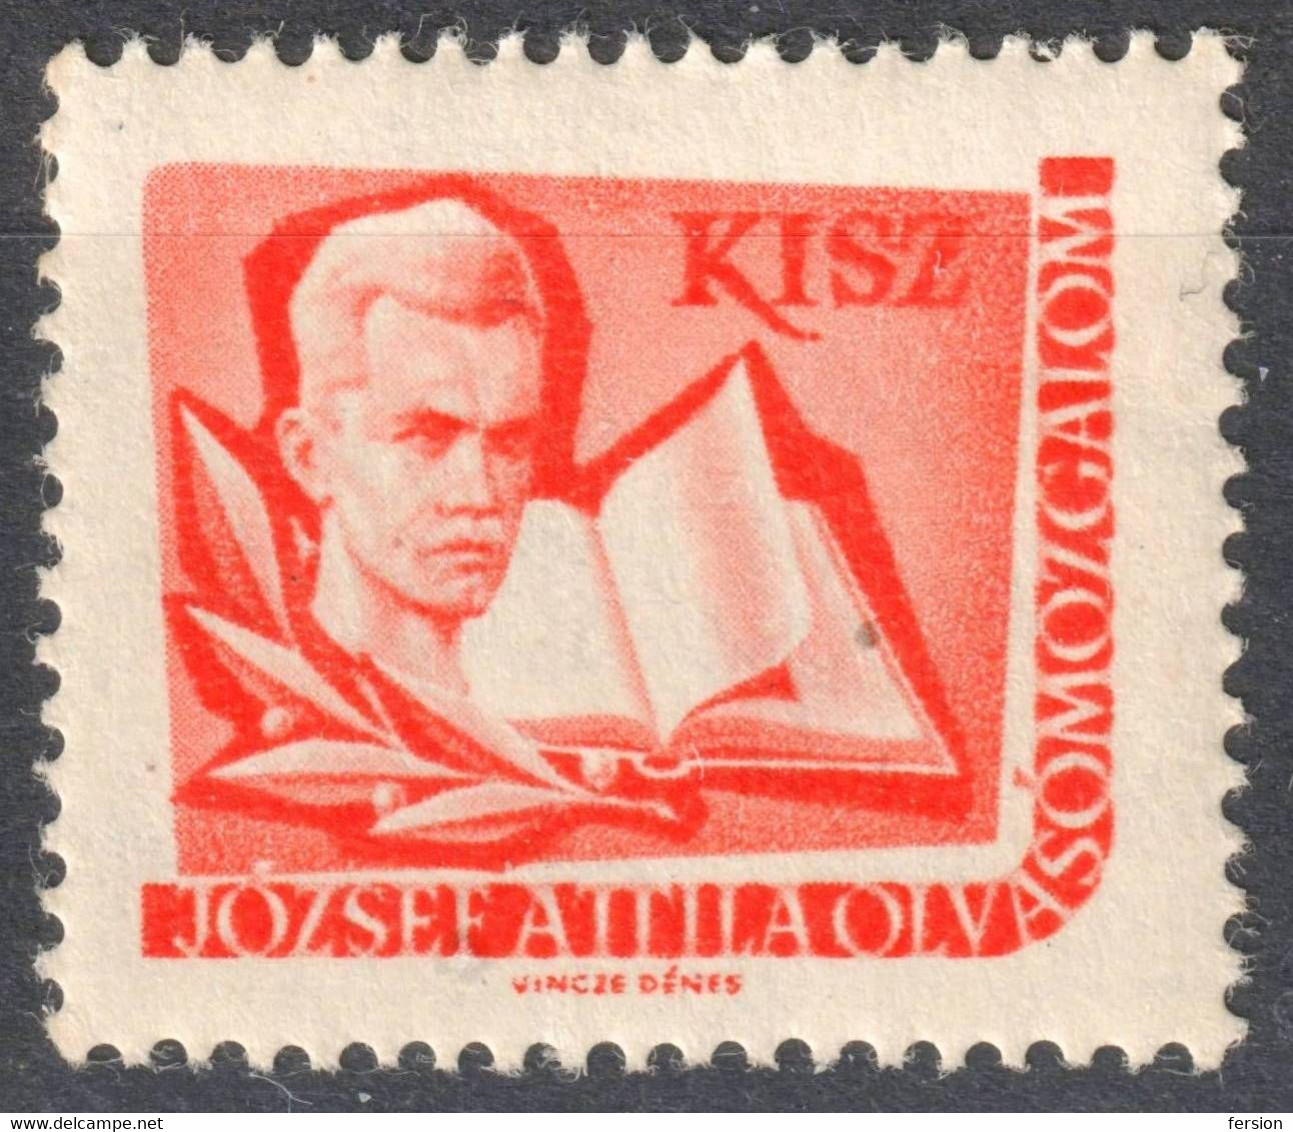 József Attila Poet Book KISZ Hungarian Young Communist League LIBRARY Member LABEL CINDERELLA VIGNETTE Hungary - Oficiales